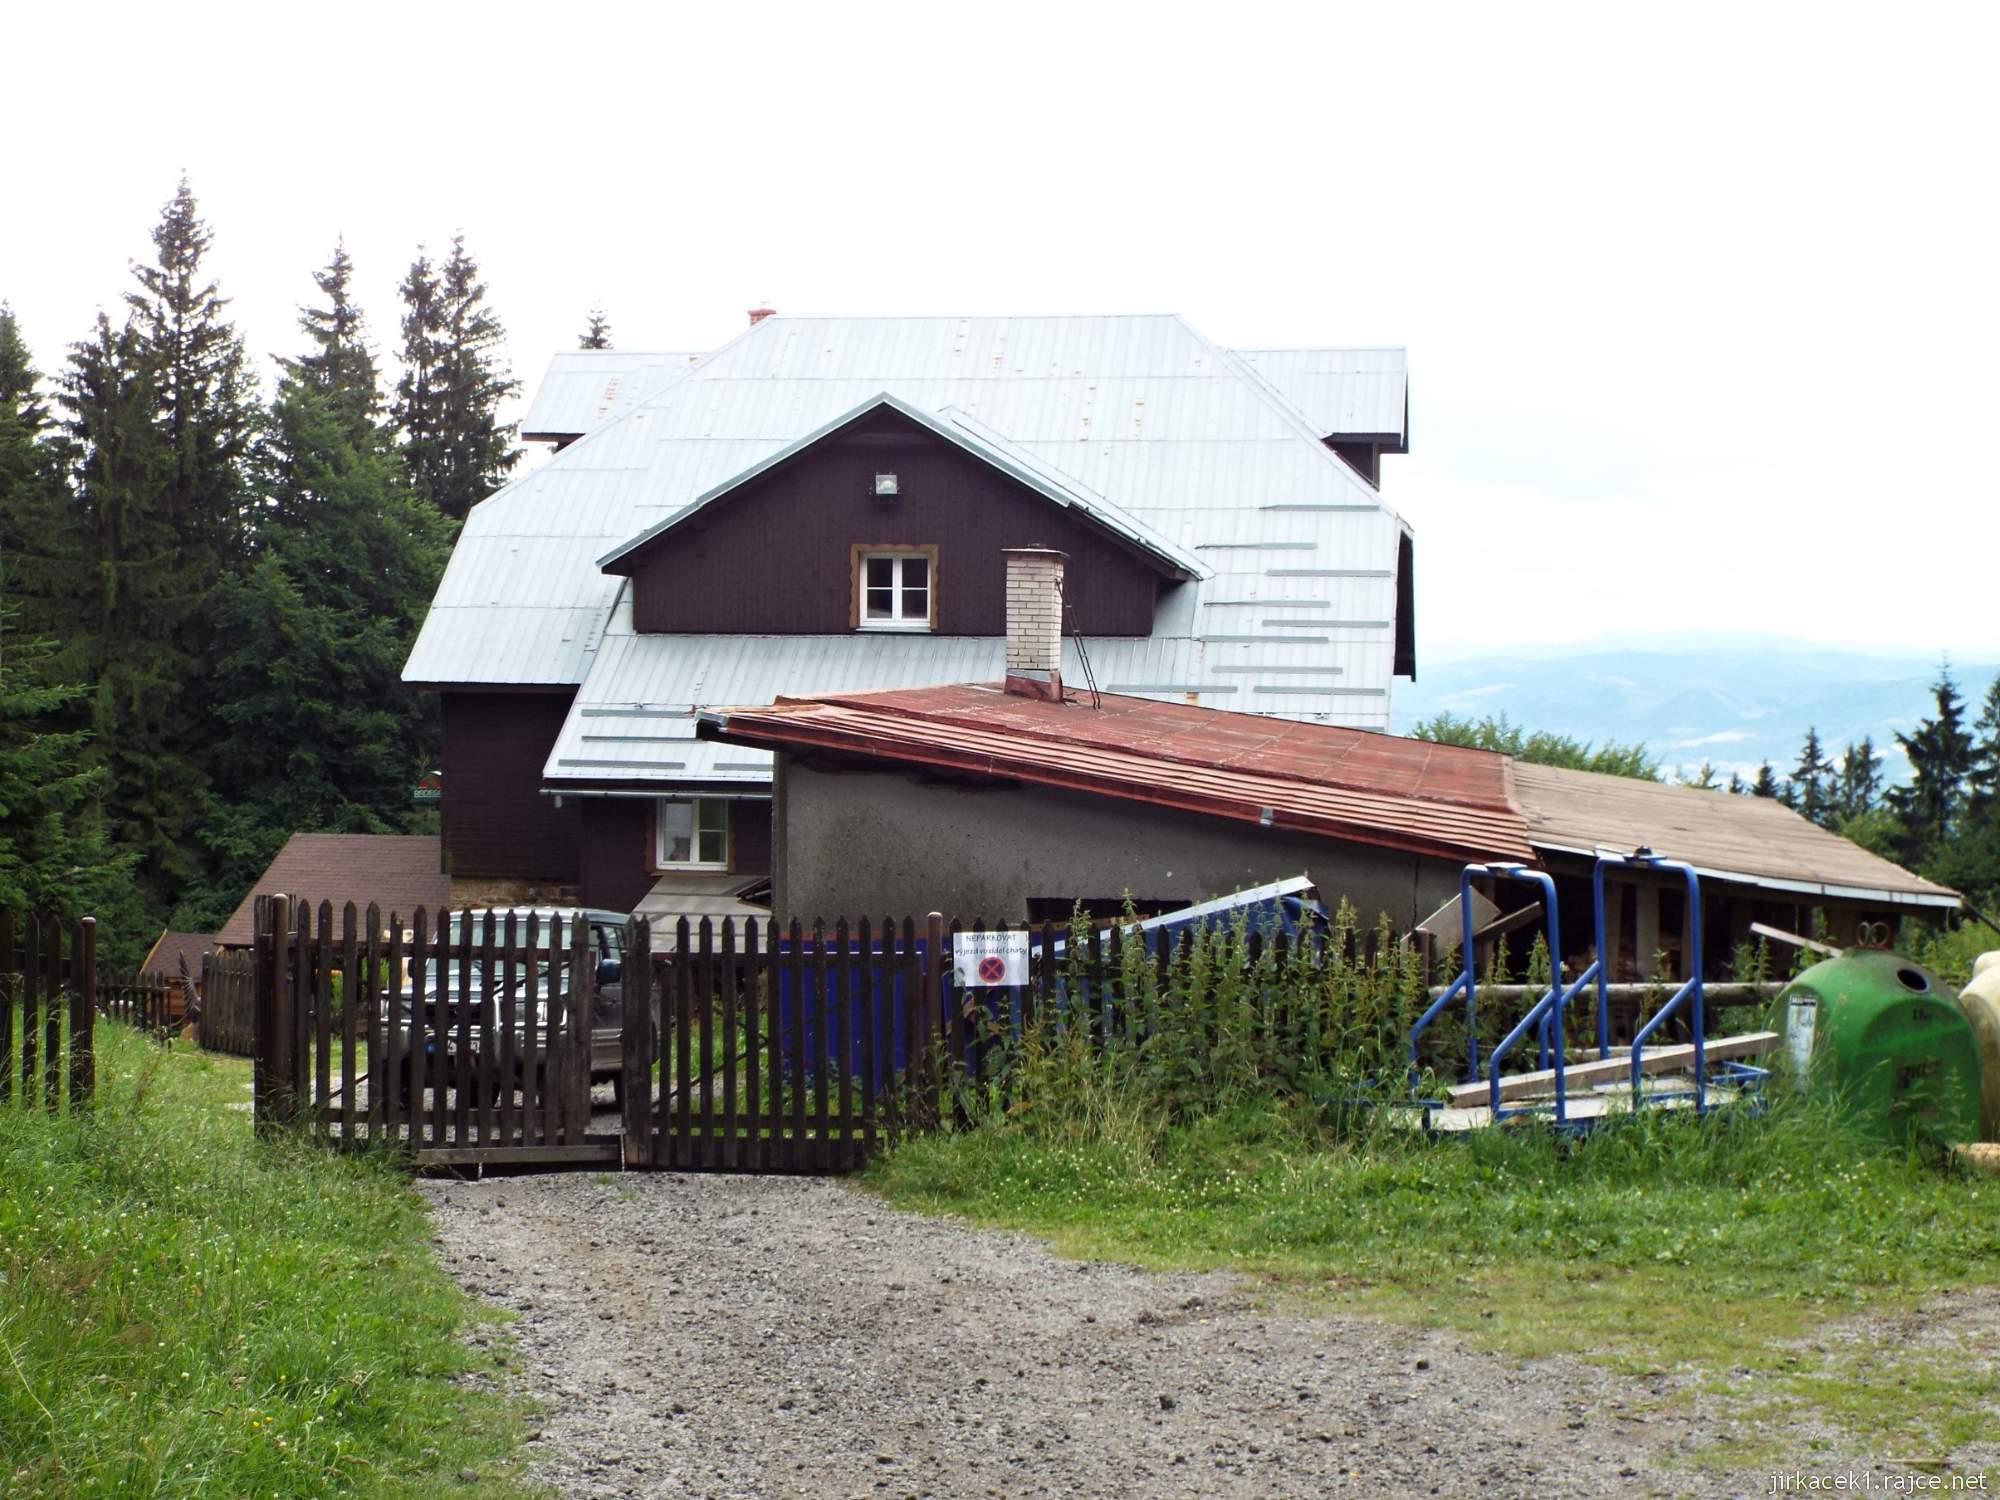 Horská chata Skalka v Beskydech - horní část chaty